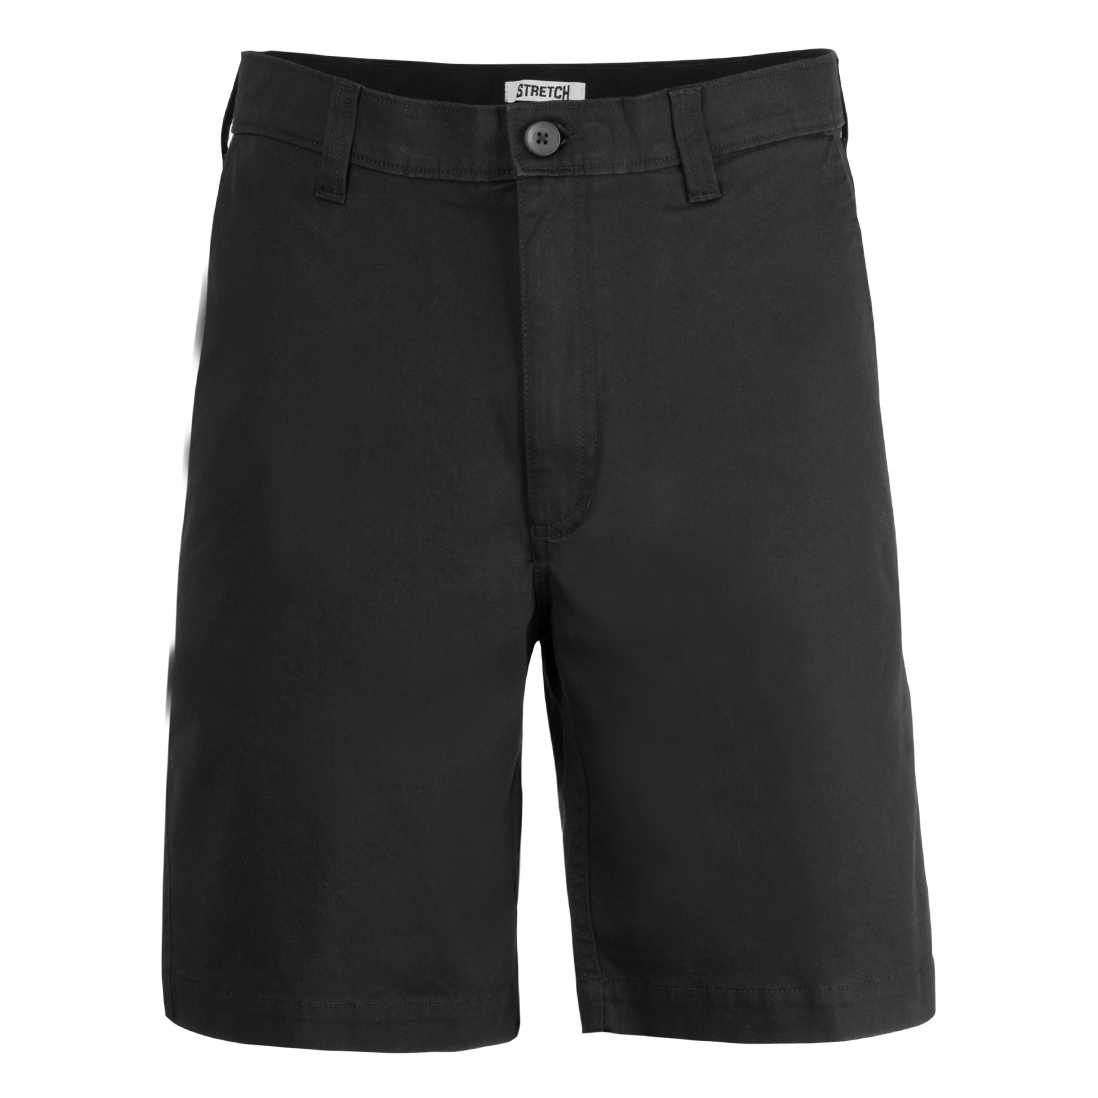 Jonsson Workwear | Flat Front Chino Shorts